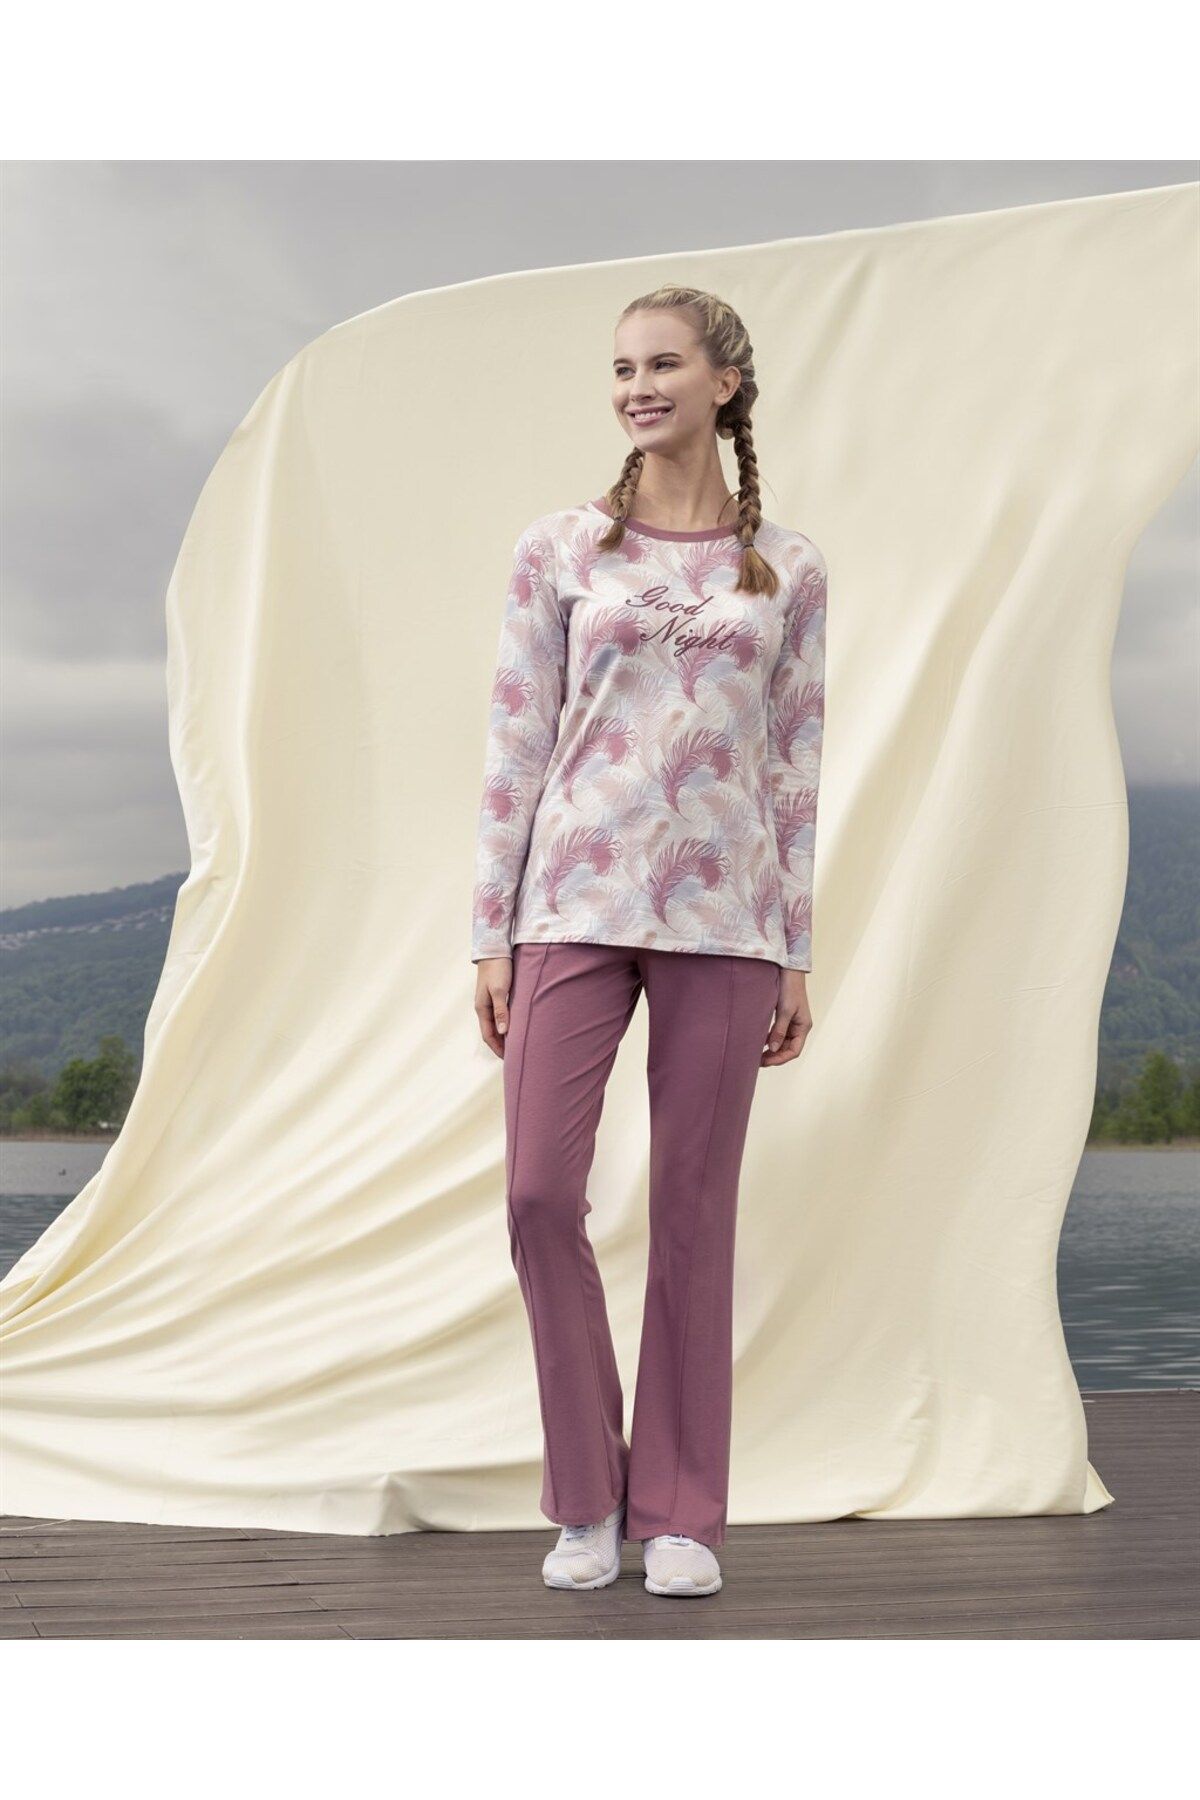 Doreanse Kadın T-shirt Pijama Takımı 4043